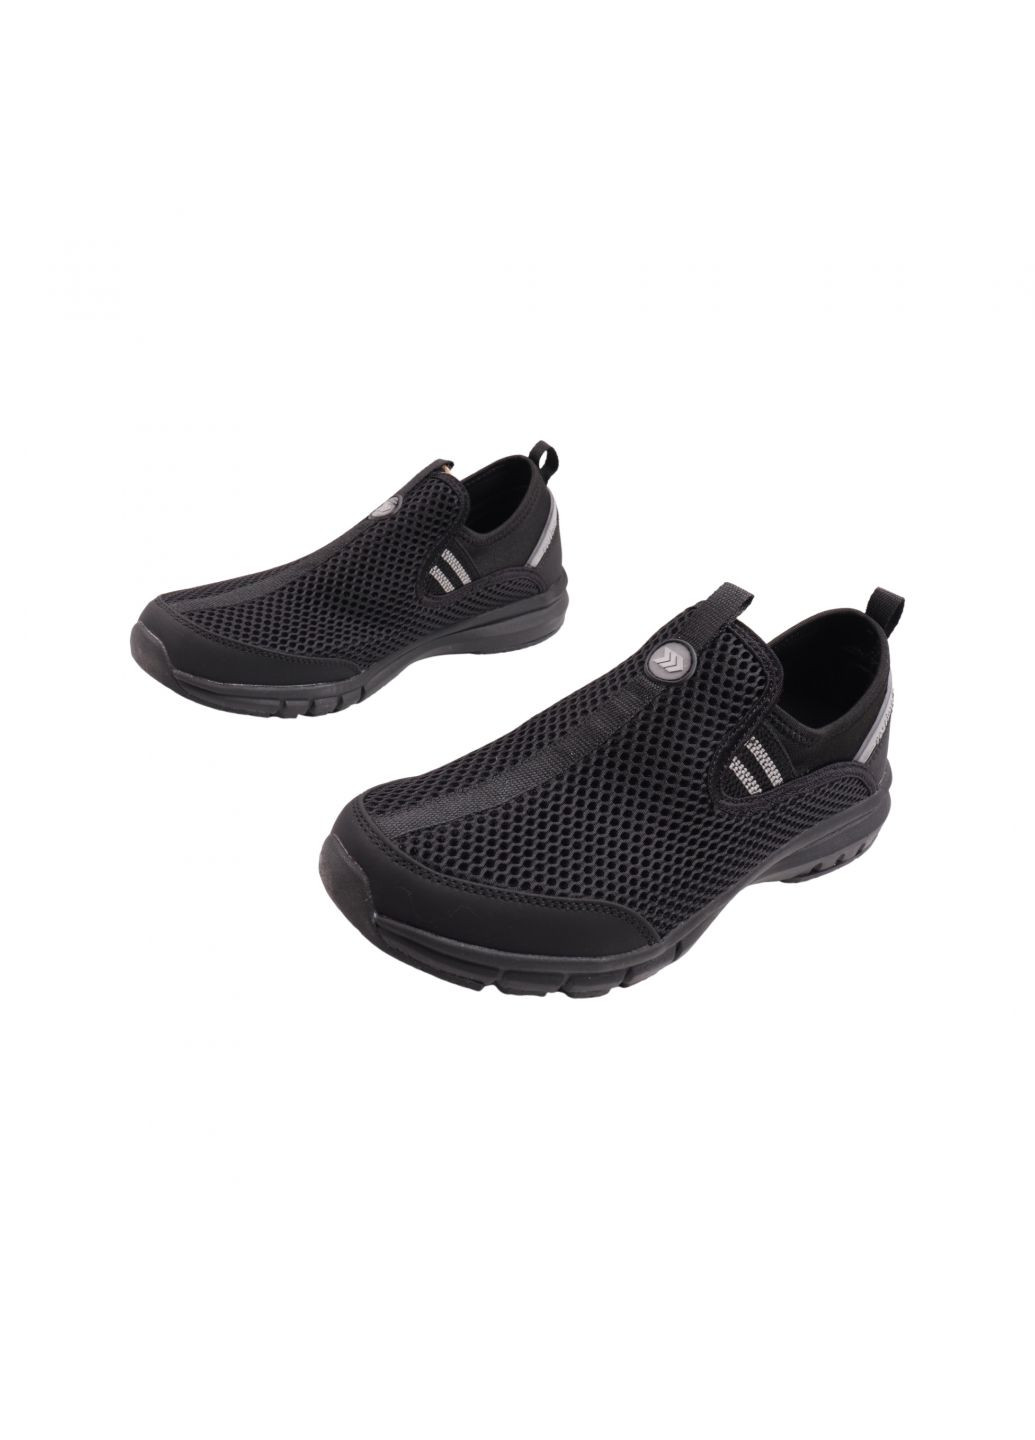 Черные кроссовки мужские черные текстиль Restime 224-23LK